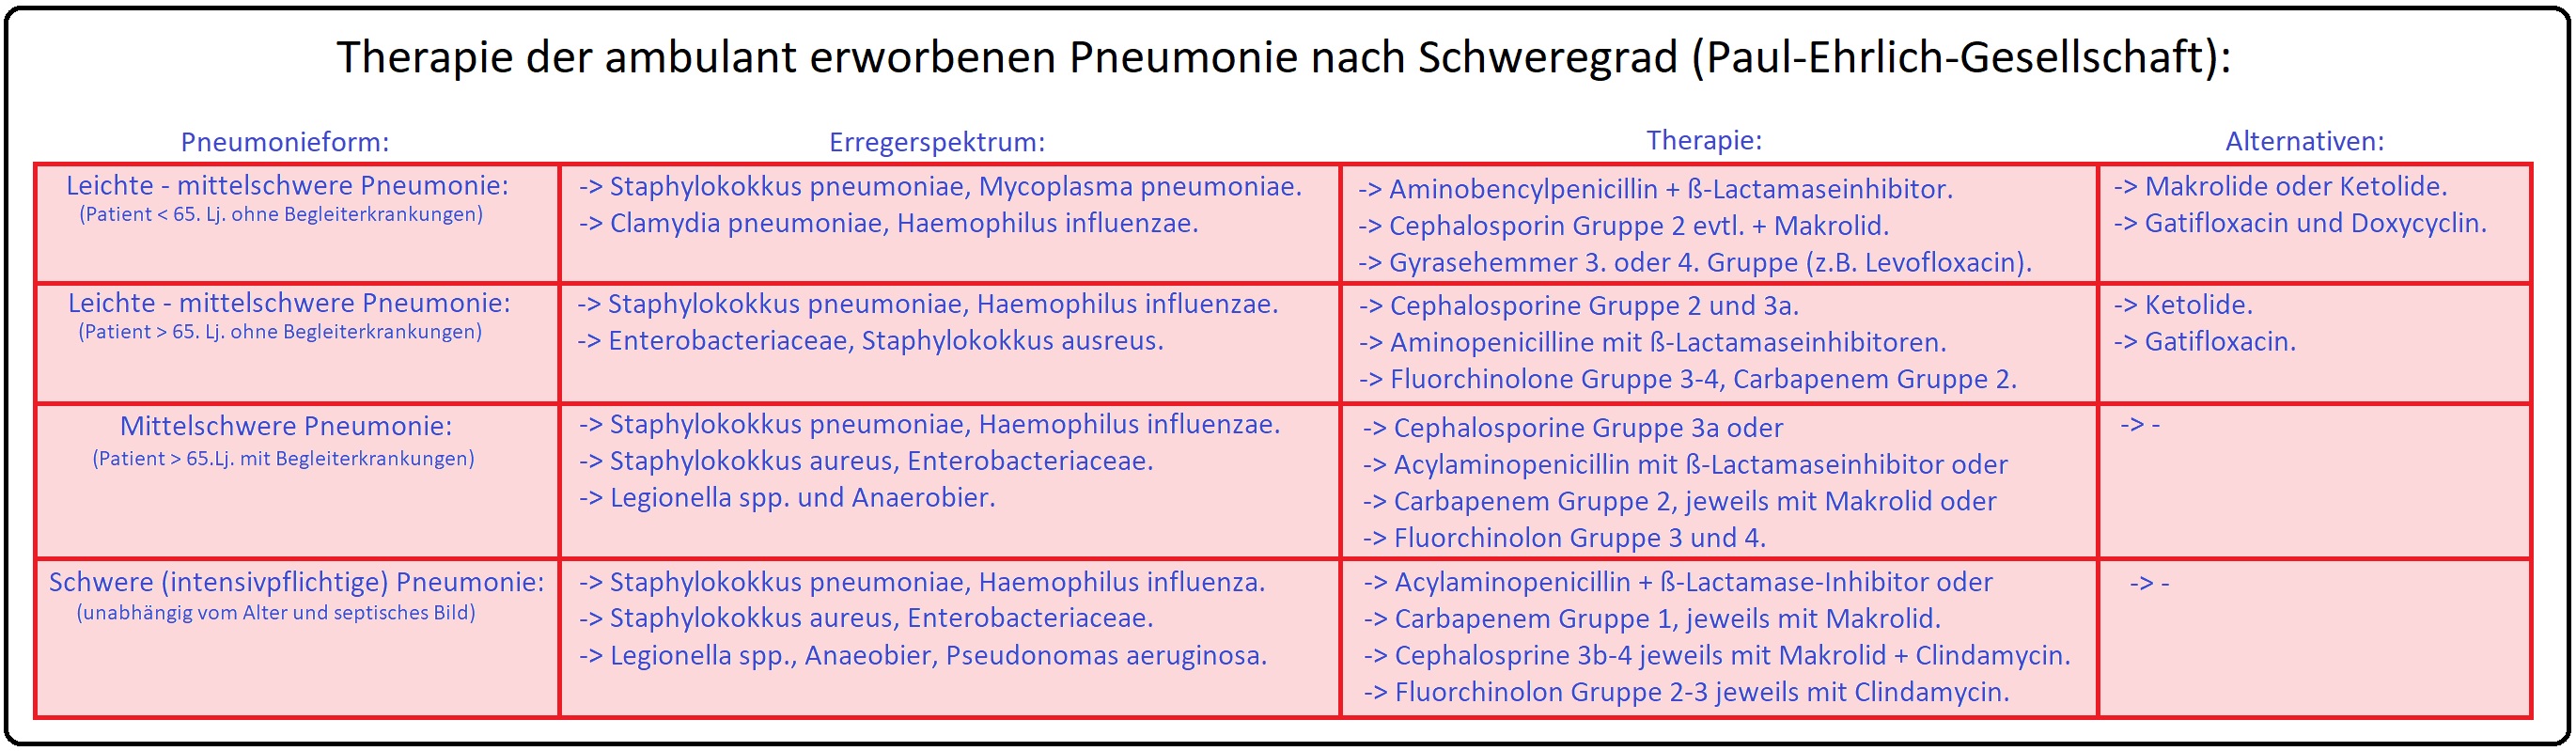 994 Therapie der ambulant erworbenen Pneumonie nach Schweregrad